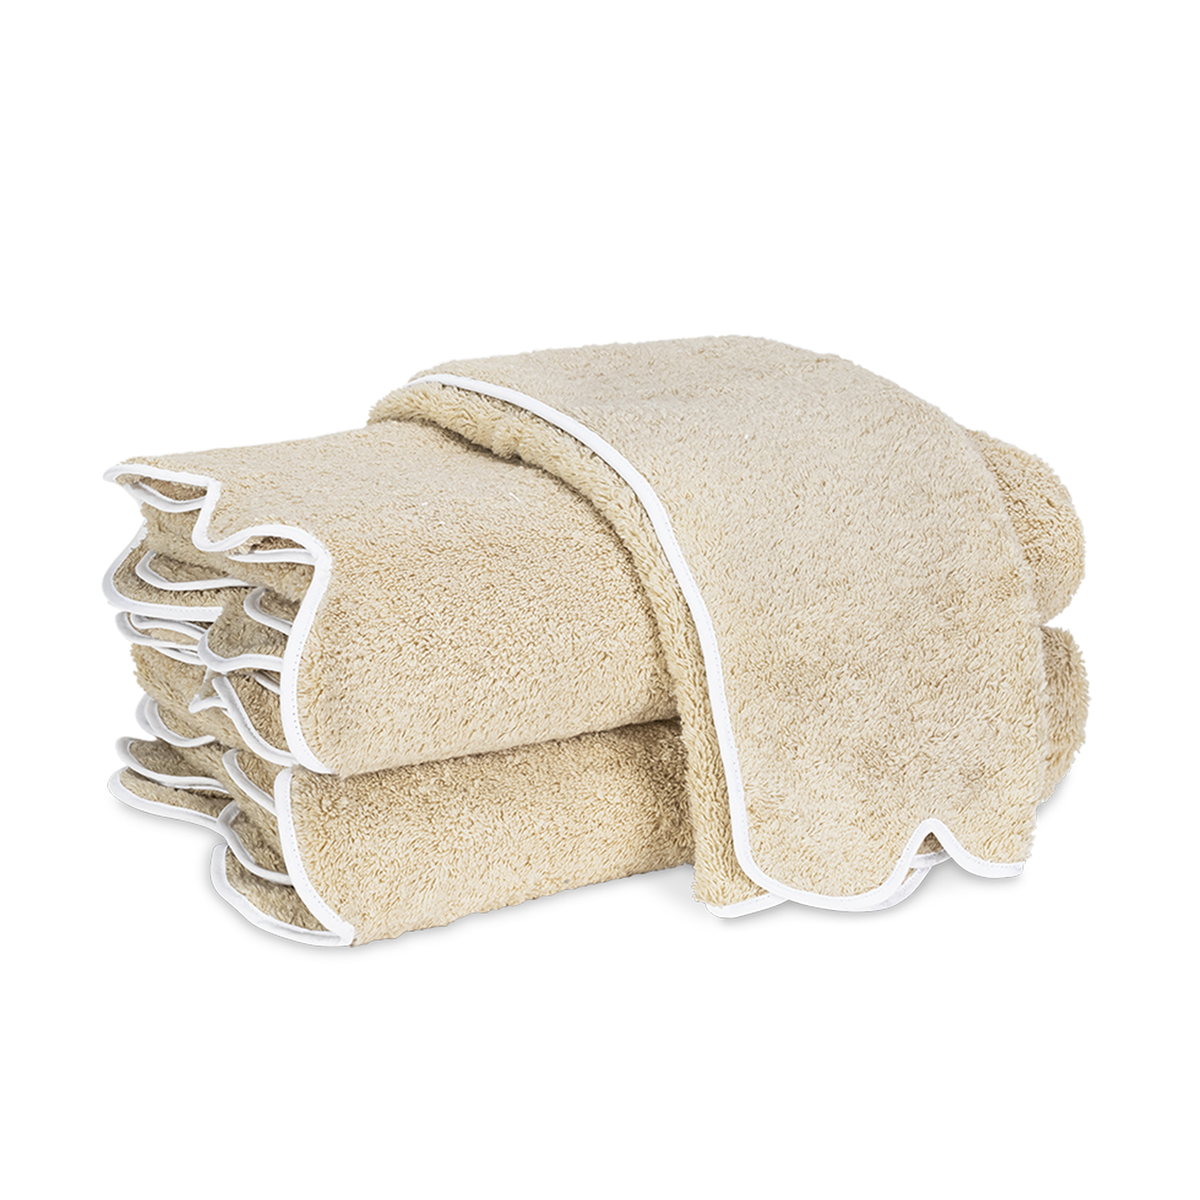 Silo Image of Matouk Cairo Scallop Bath Towels in Color Sand/White